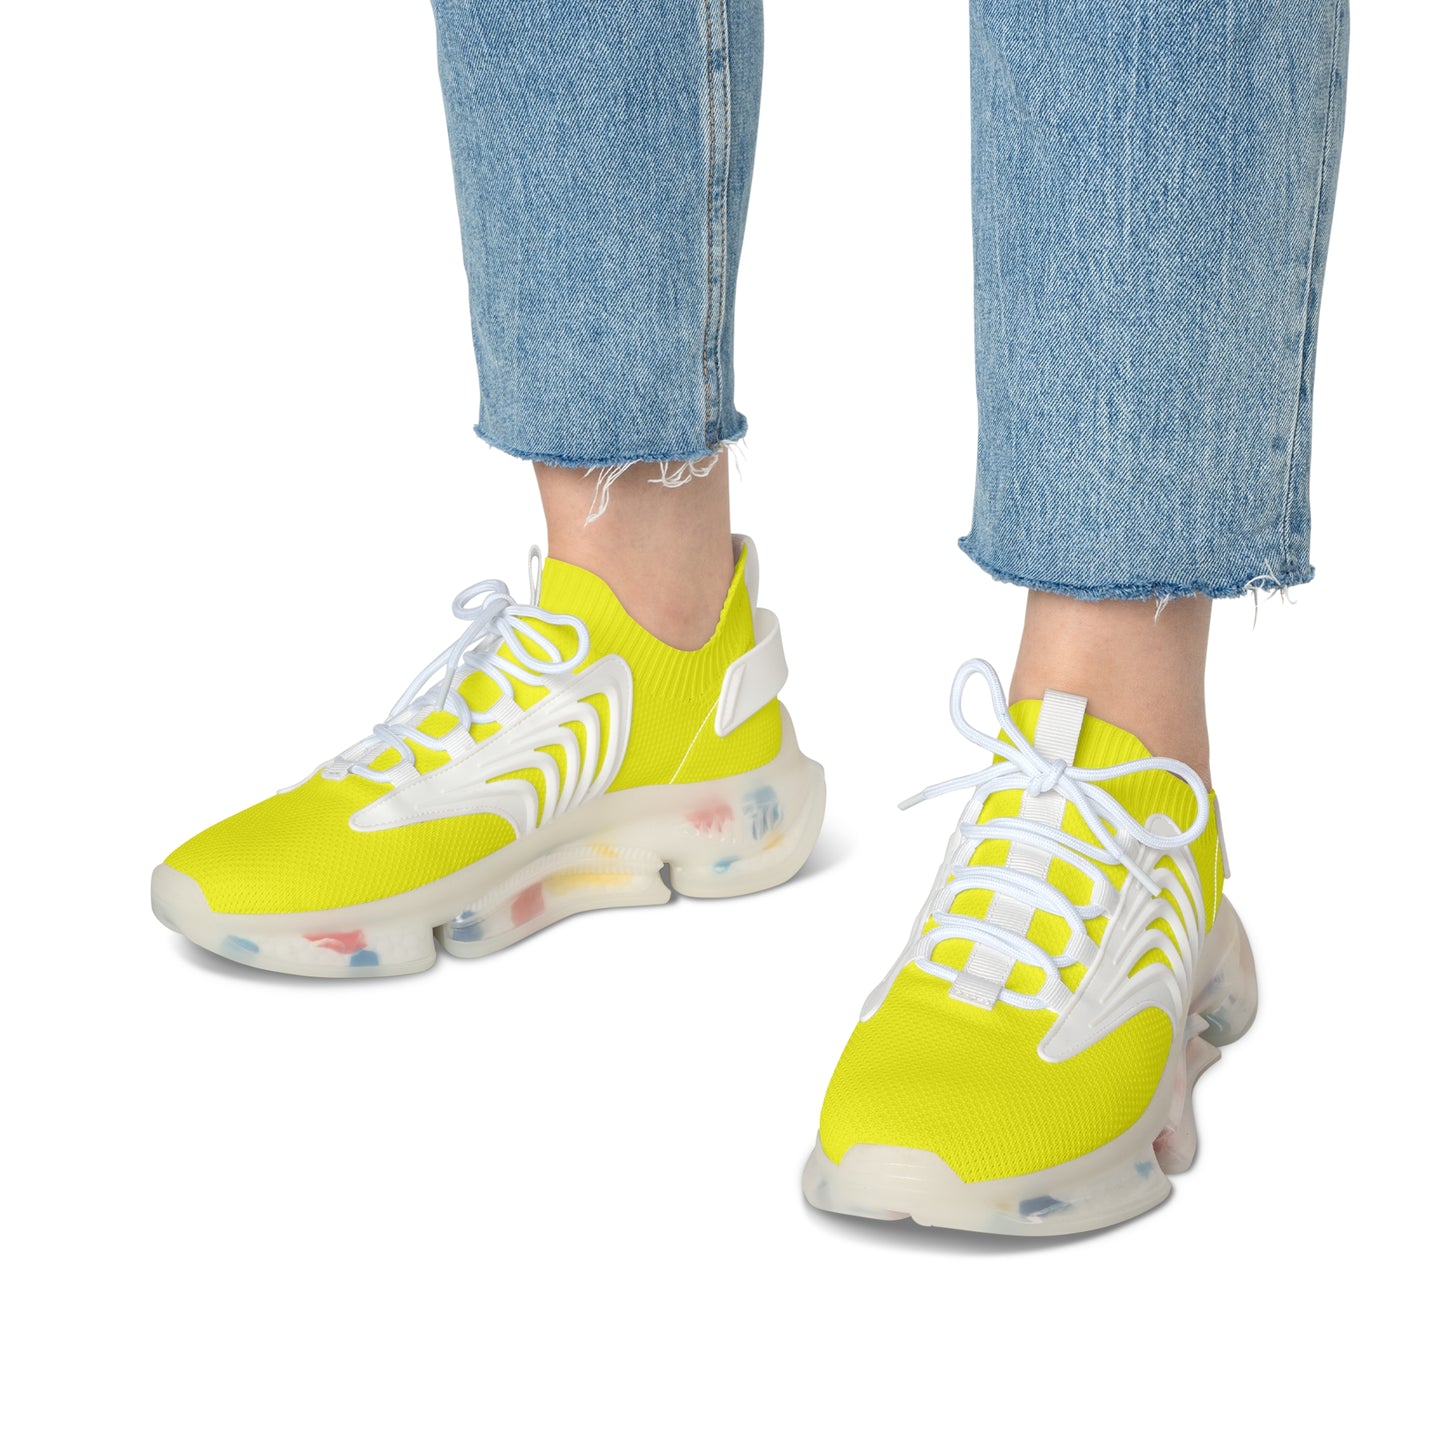 Snooty Fox Art Women's Mesh Sneakers - Neon Yellow